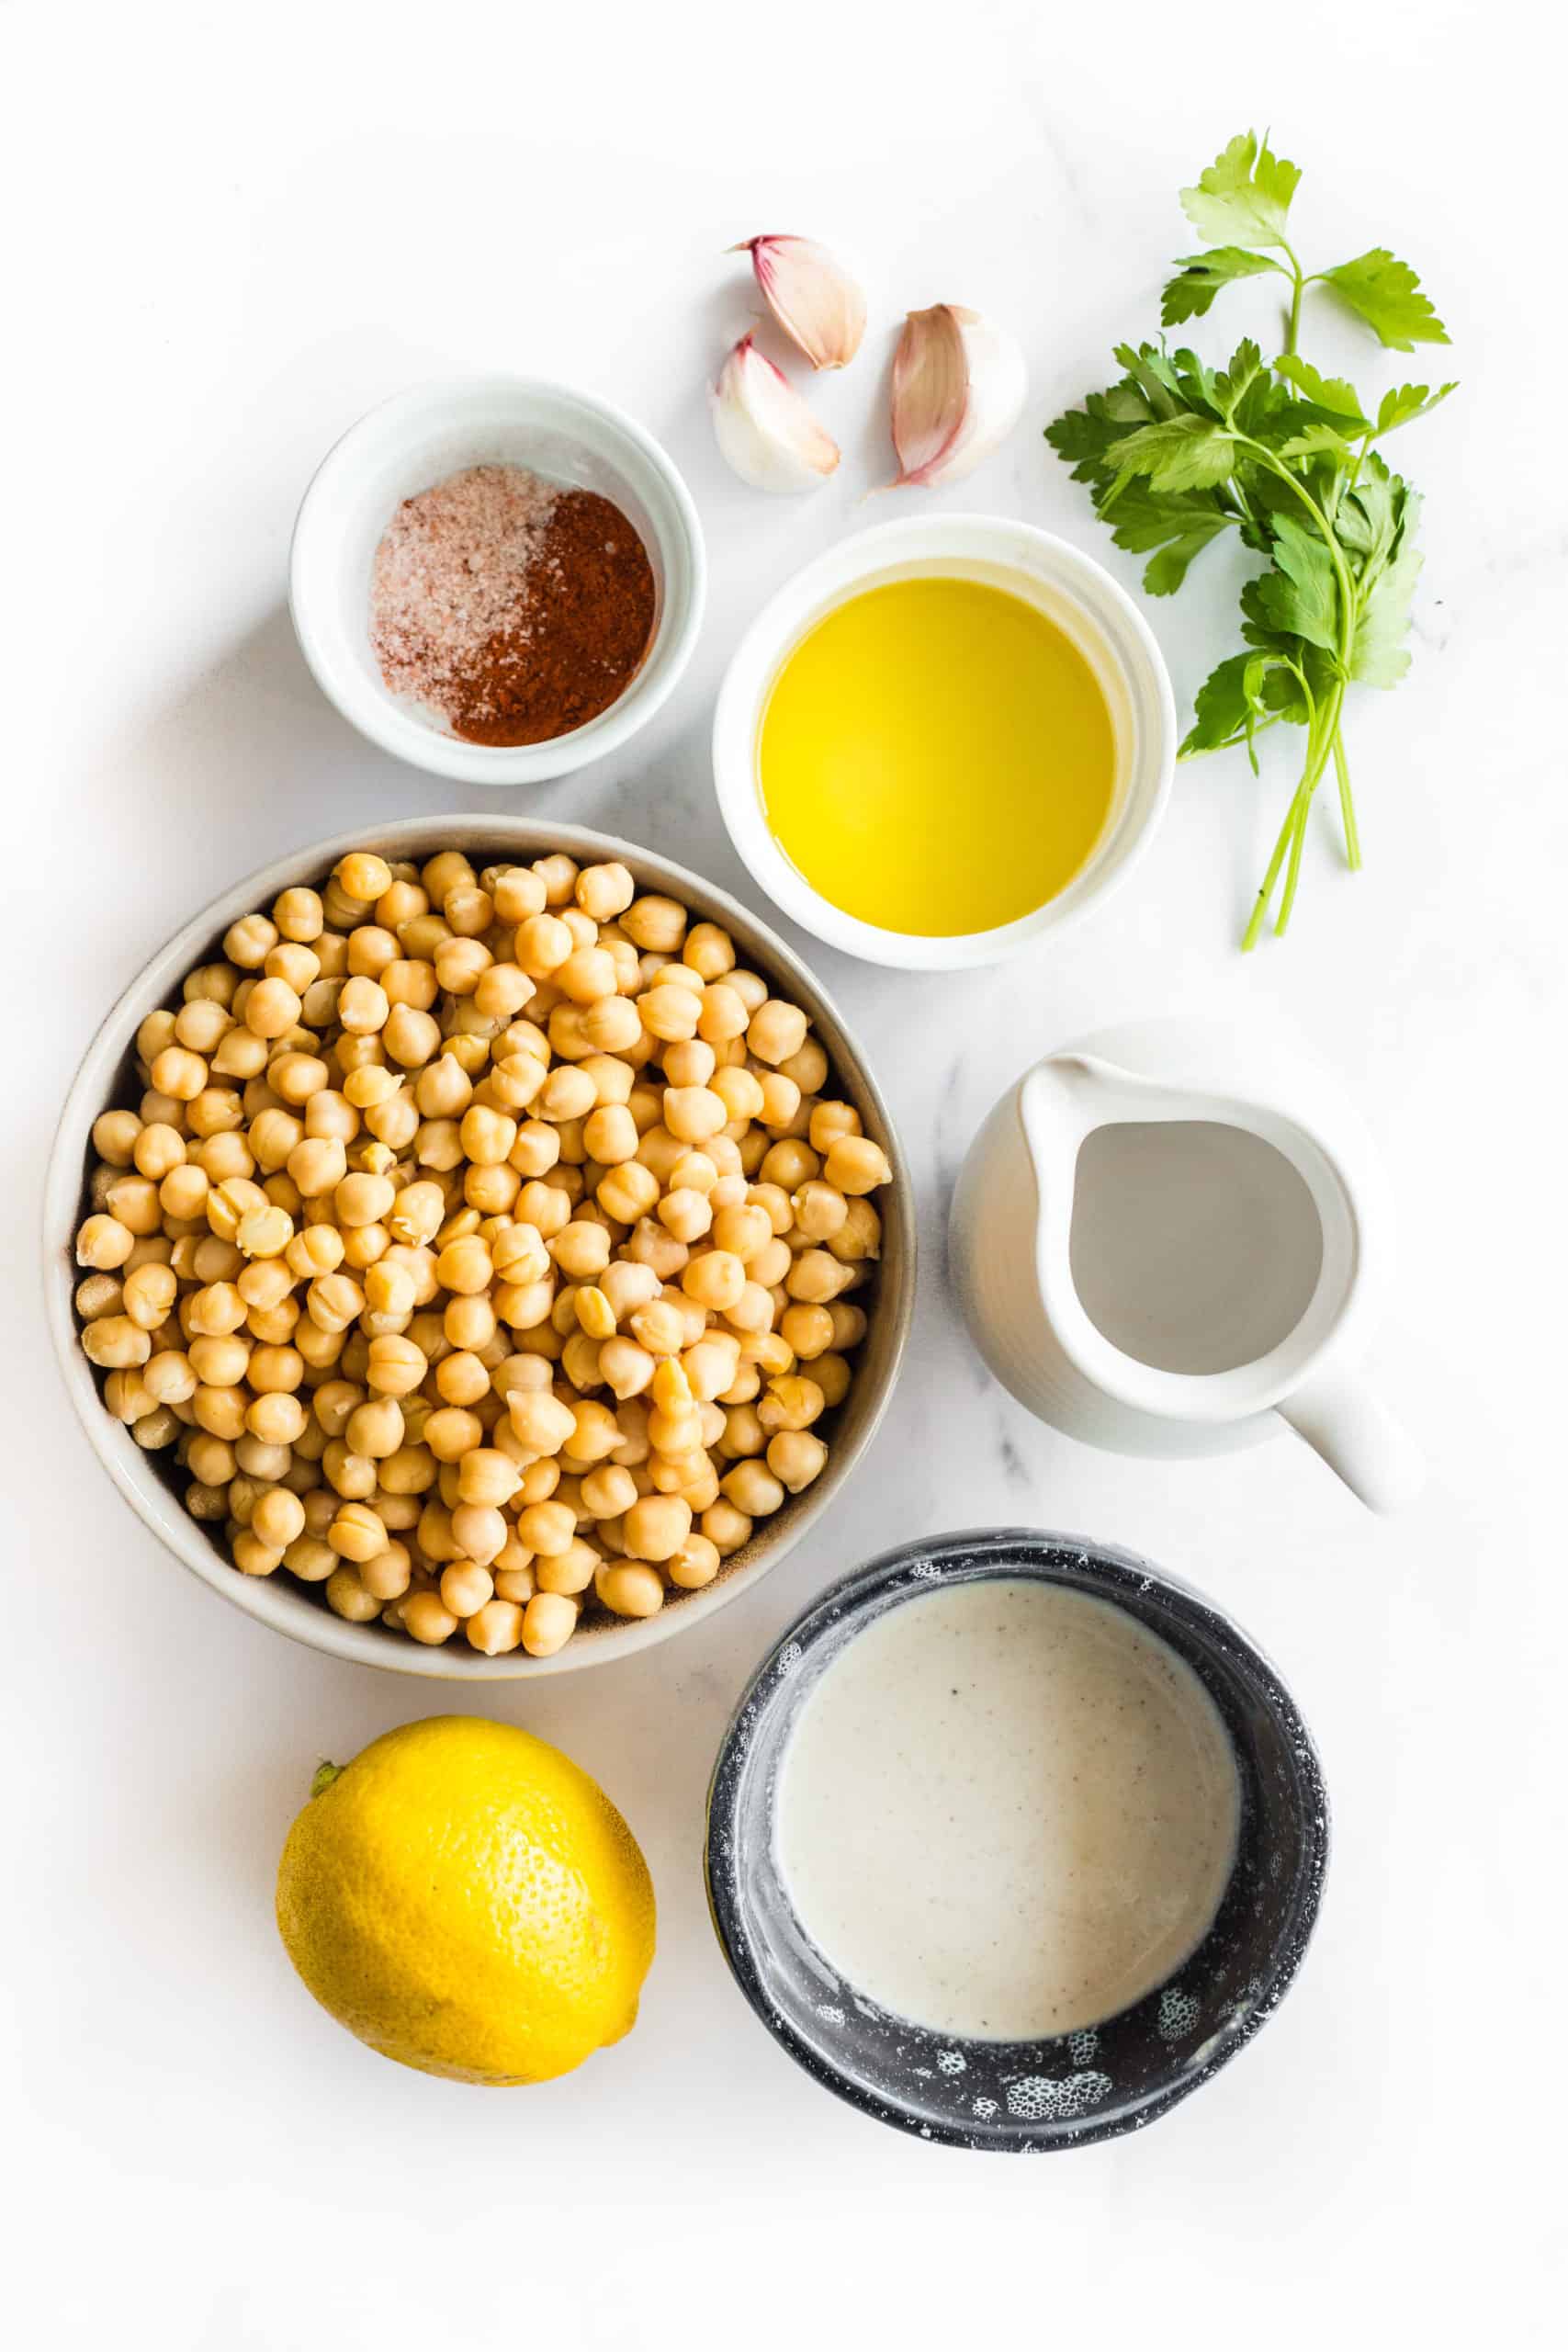 Ingredients for preparing hummus - chickpeas, garlic, tahini, lemon, water, parsley, salt and paprika.